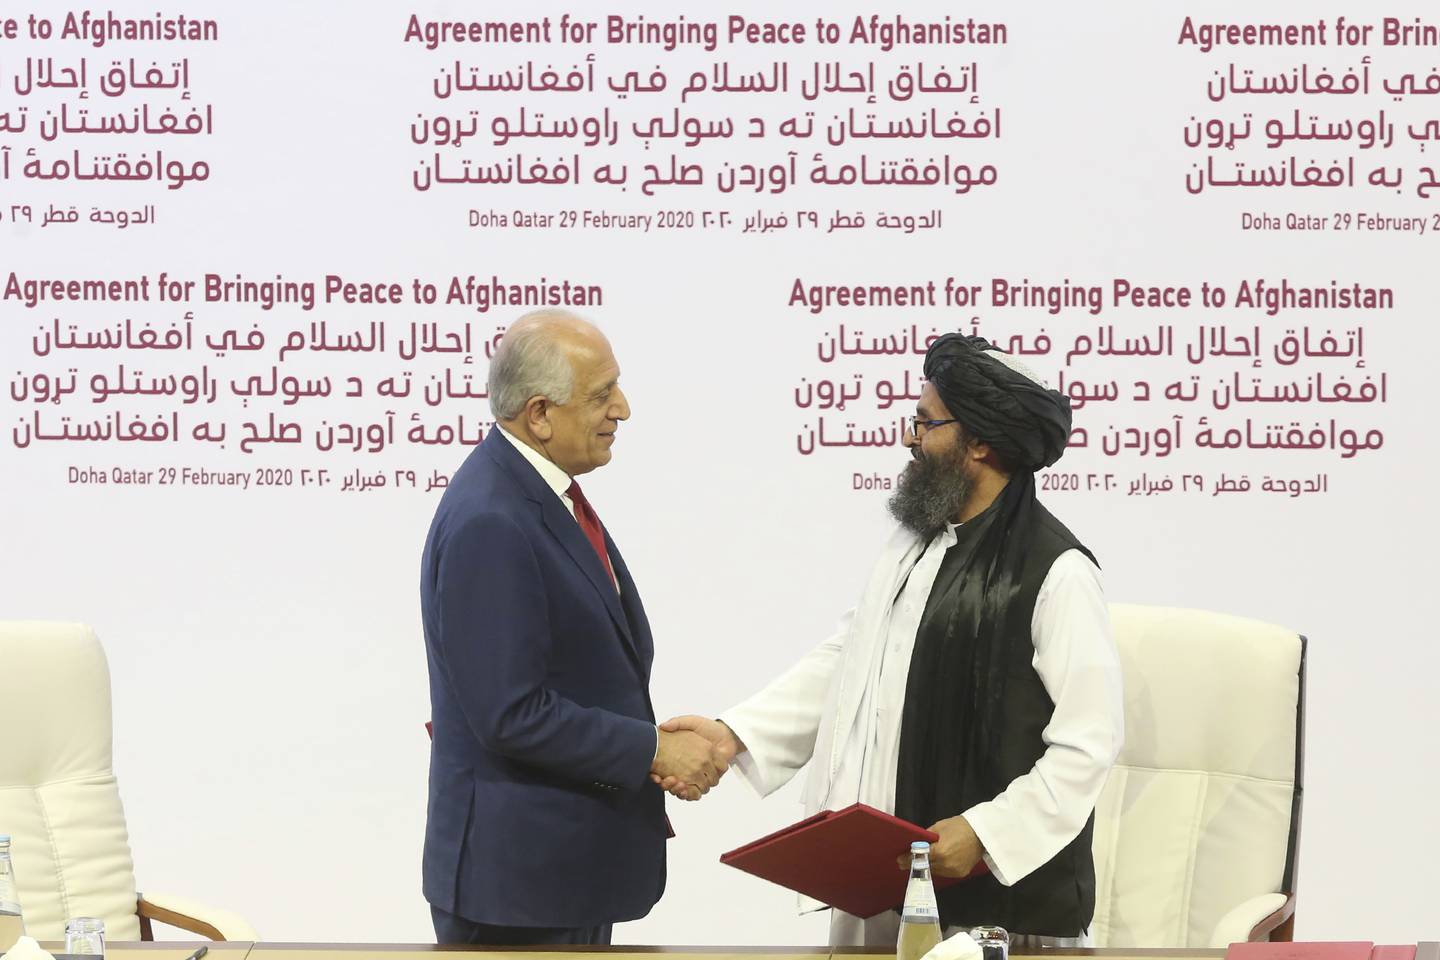 Mulla Baradar var sentral da avtalen om amerikansk tilbaketrekning fra Afghanistan ble inngått med tidligere president Donald Trumps administrasjon. Her er han avbildet sammen med USAs utsending Zalmay Khalilzade i Doha, Qatar i februar 2020.